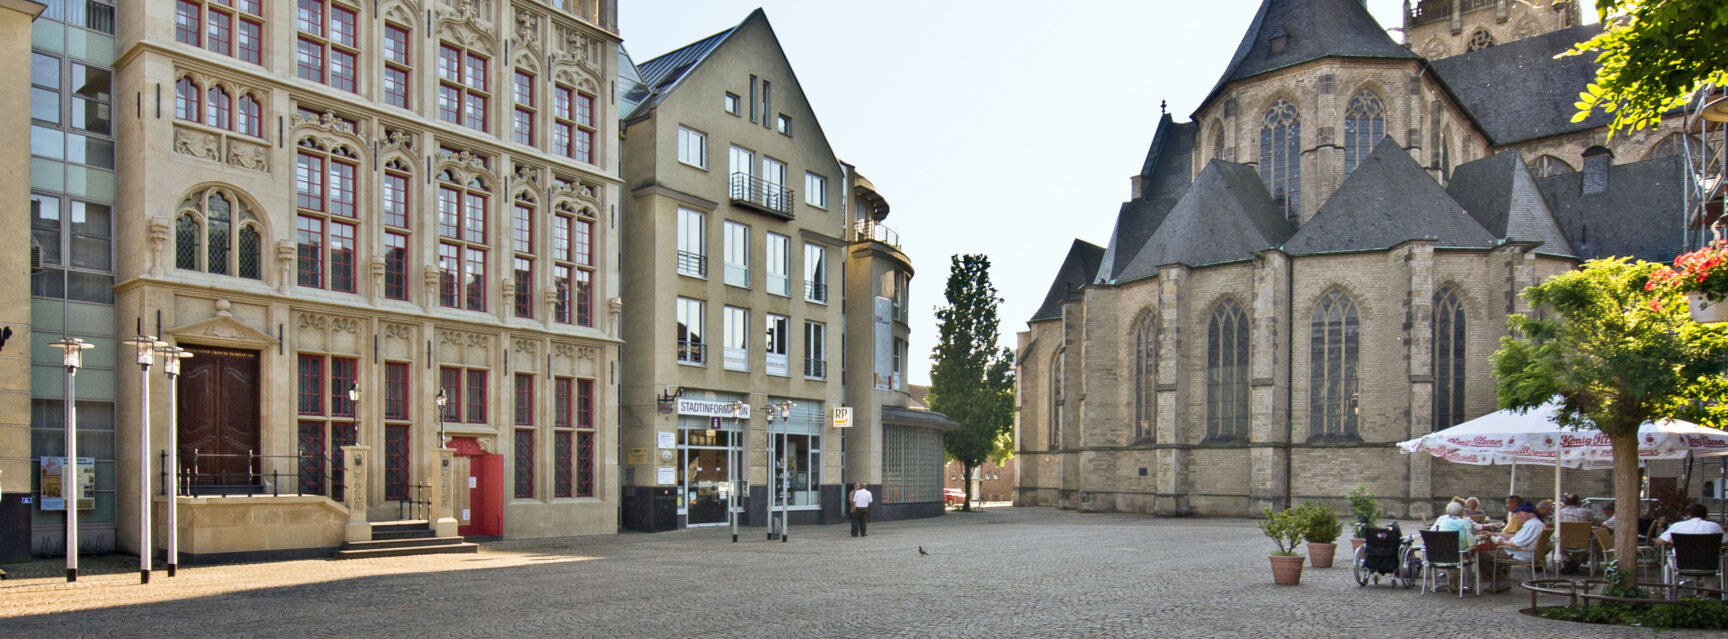 Großer Markt mit Rathausfassade und Dom_Jürgen Bosmann